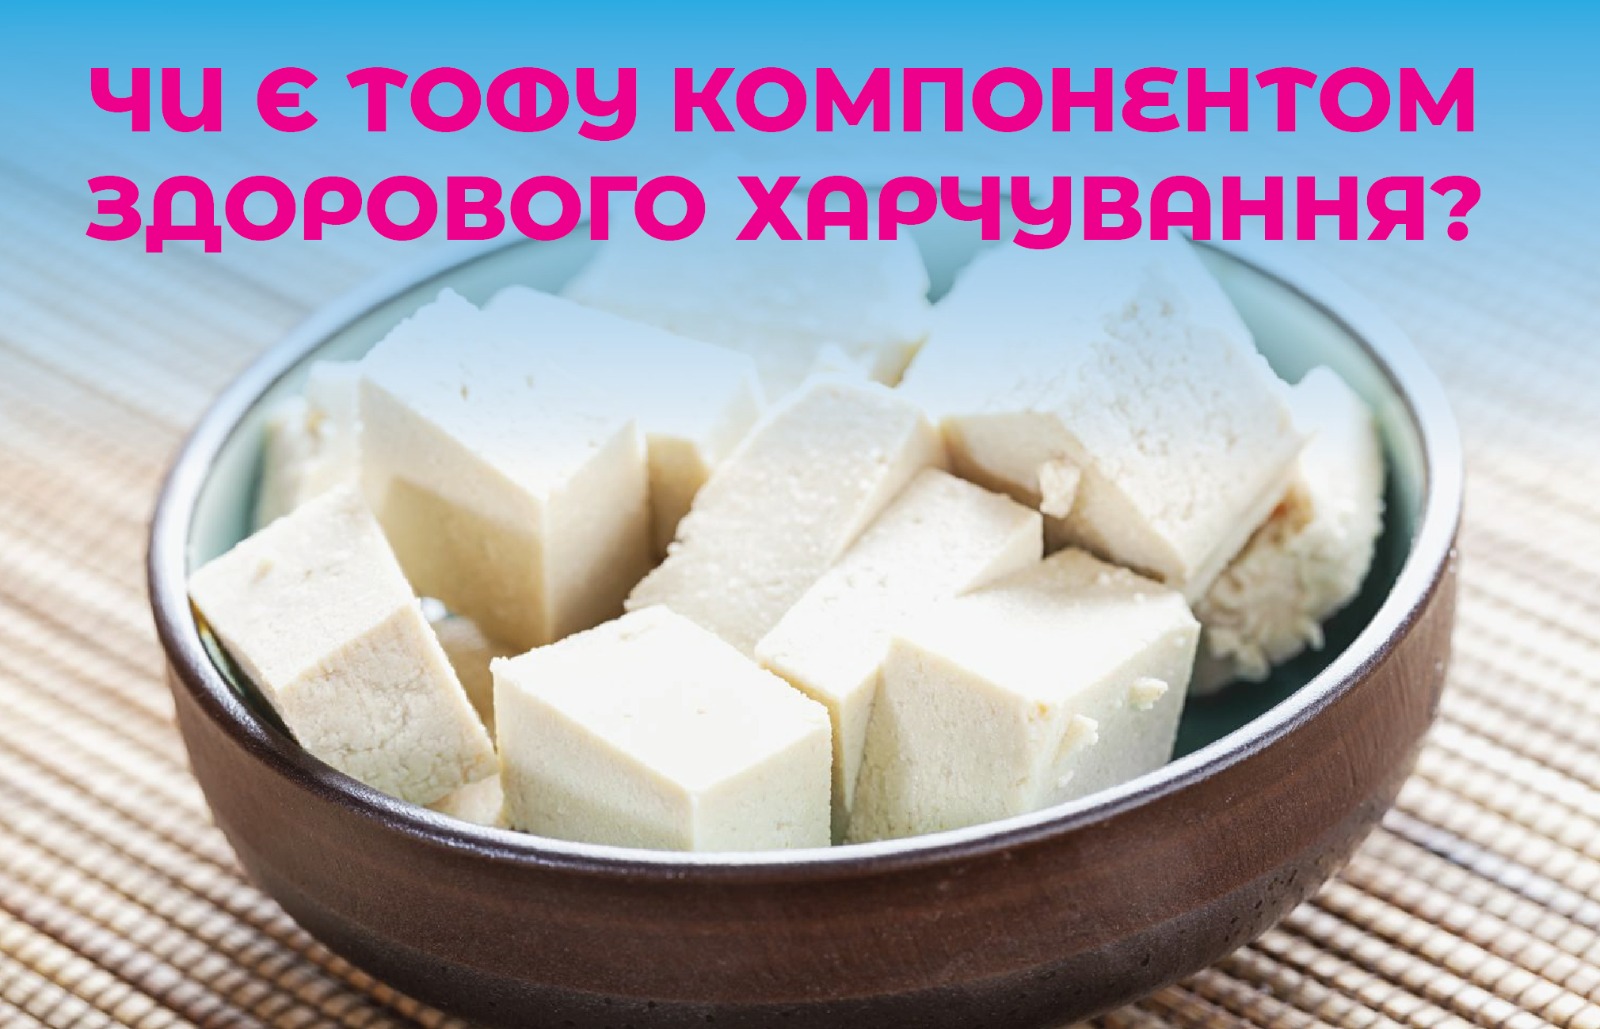 На зображенні шматочки тофу білого кольору, у верхній частині зображення надпис: Чи є тофу компонентом зорового харчування?